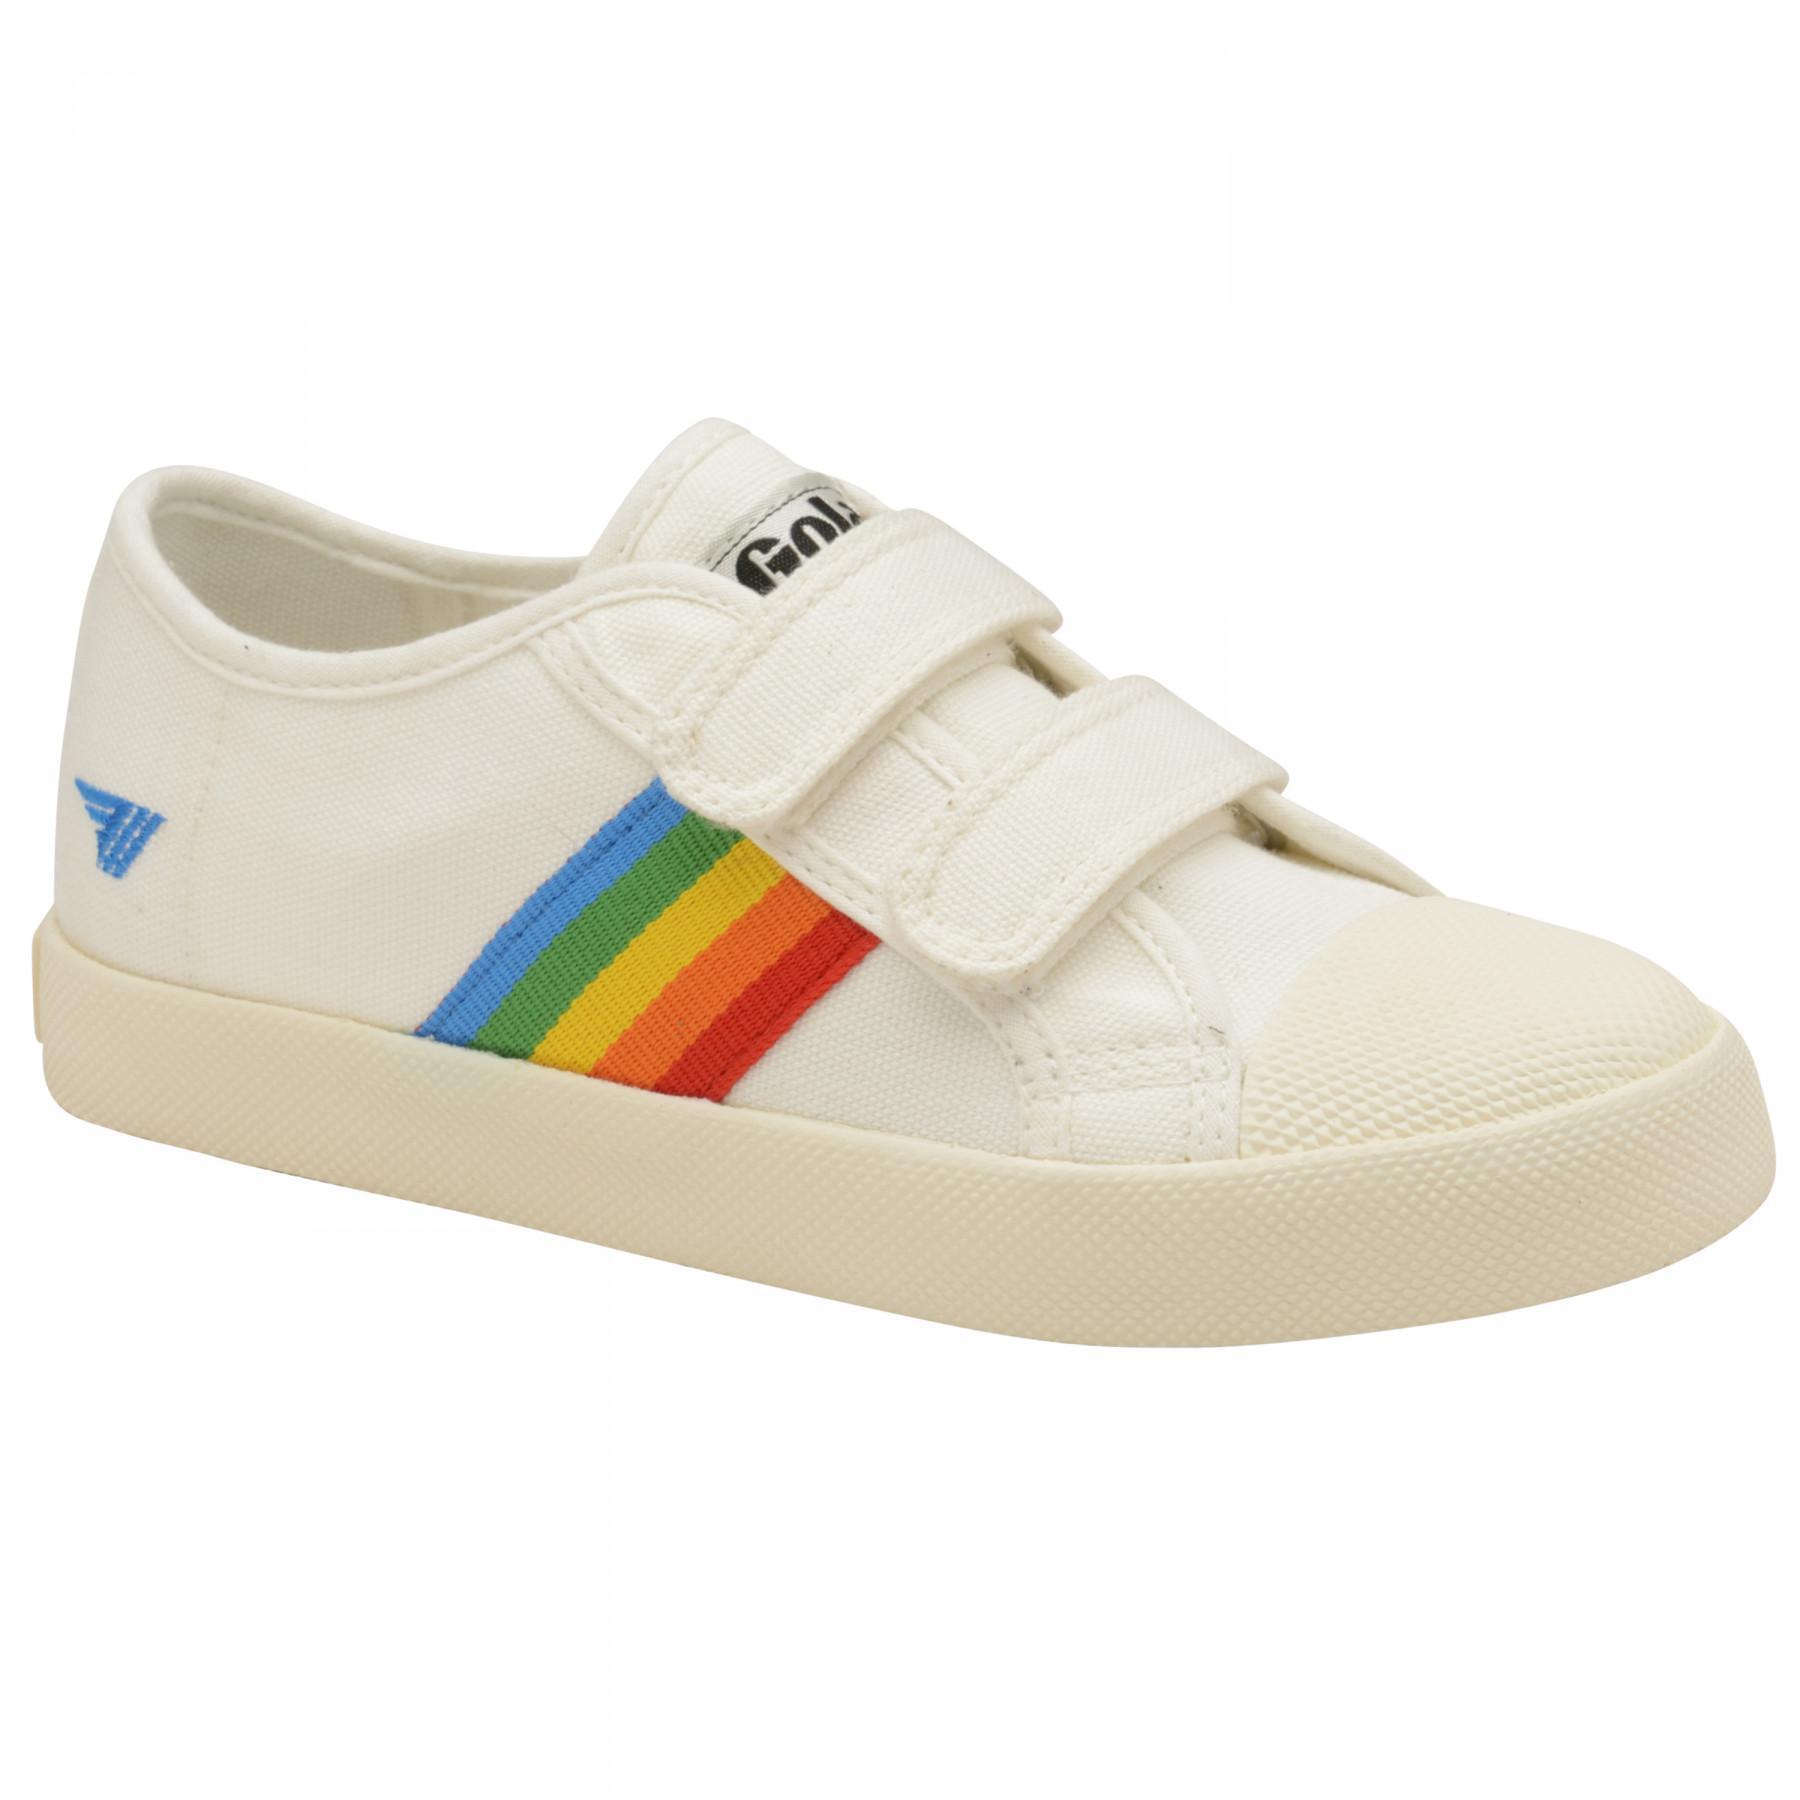 Children's sneakers Gola Coaster Rainbow Velcro